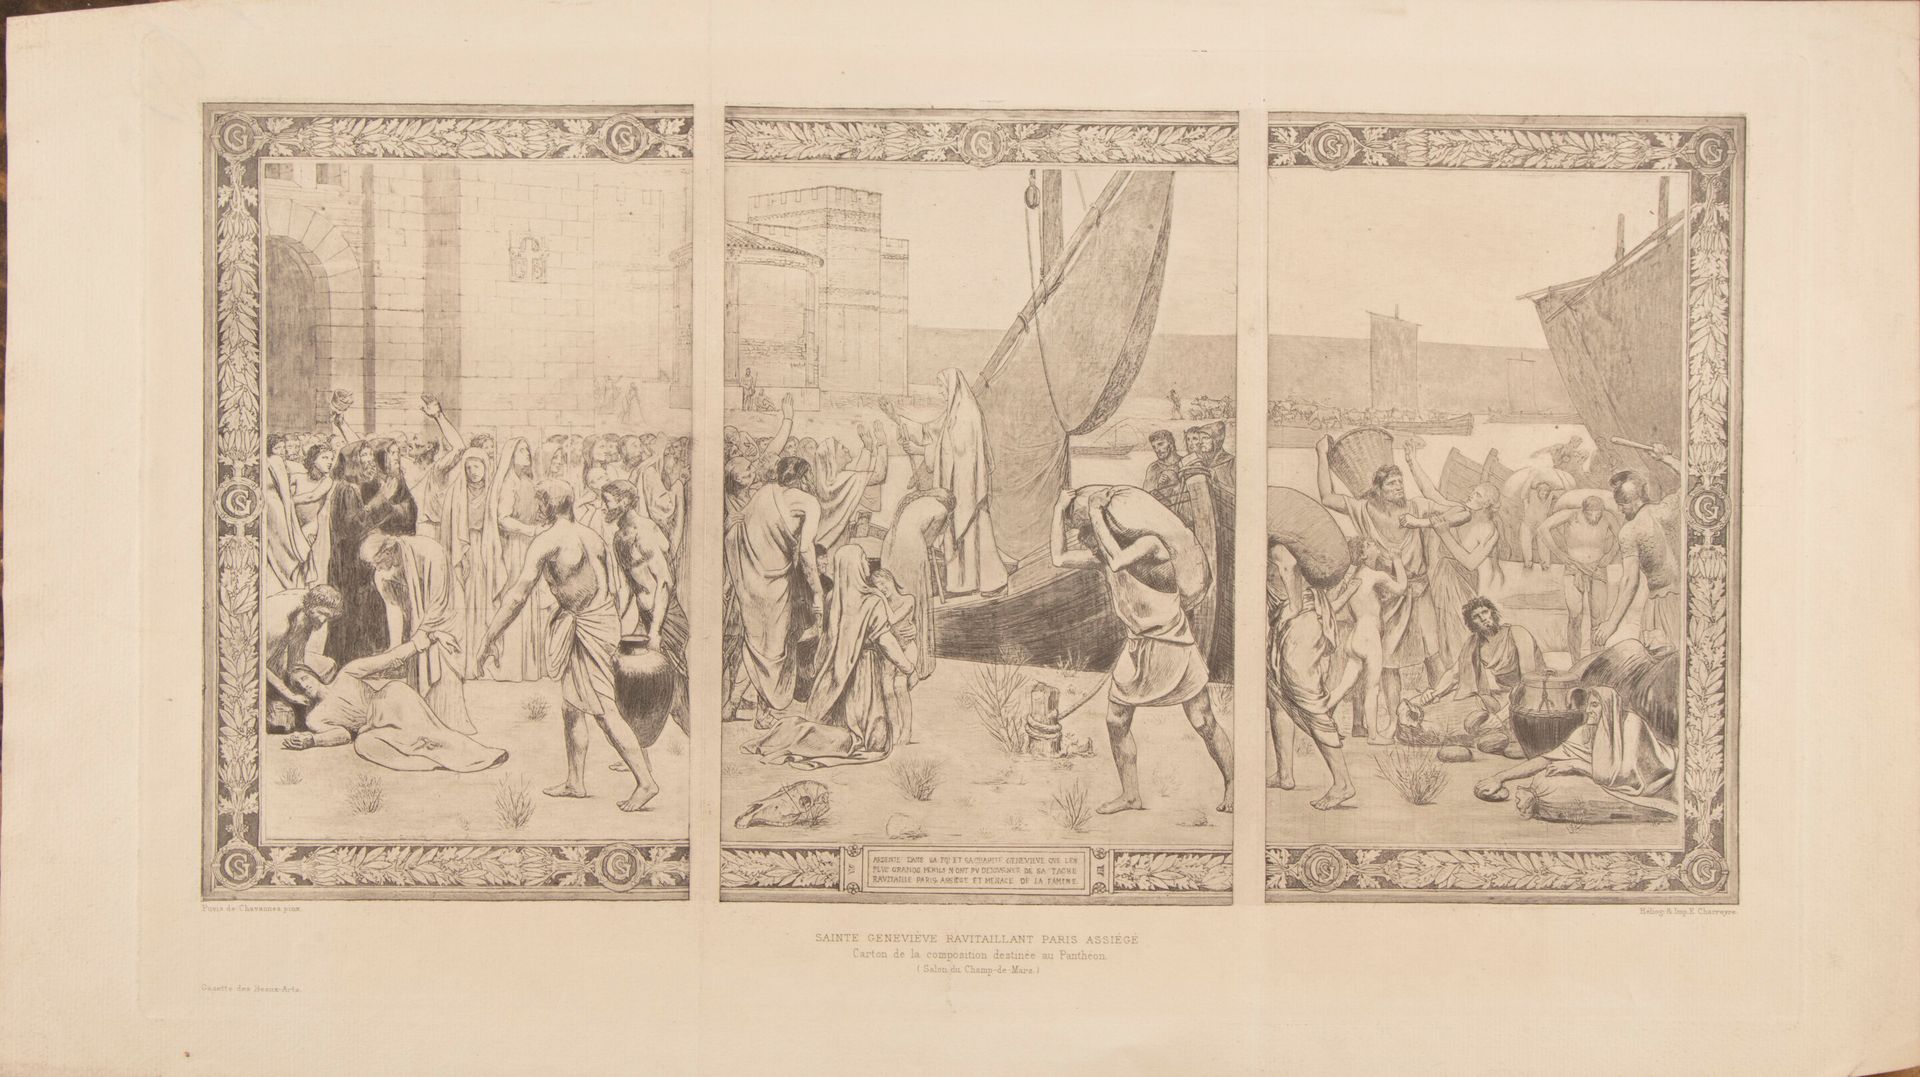 Null Dopo PUVIS de CHAVANNE (1824-1898)

Sainte Geneviève rvitaillant Paris assi&hellip;